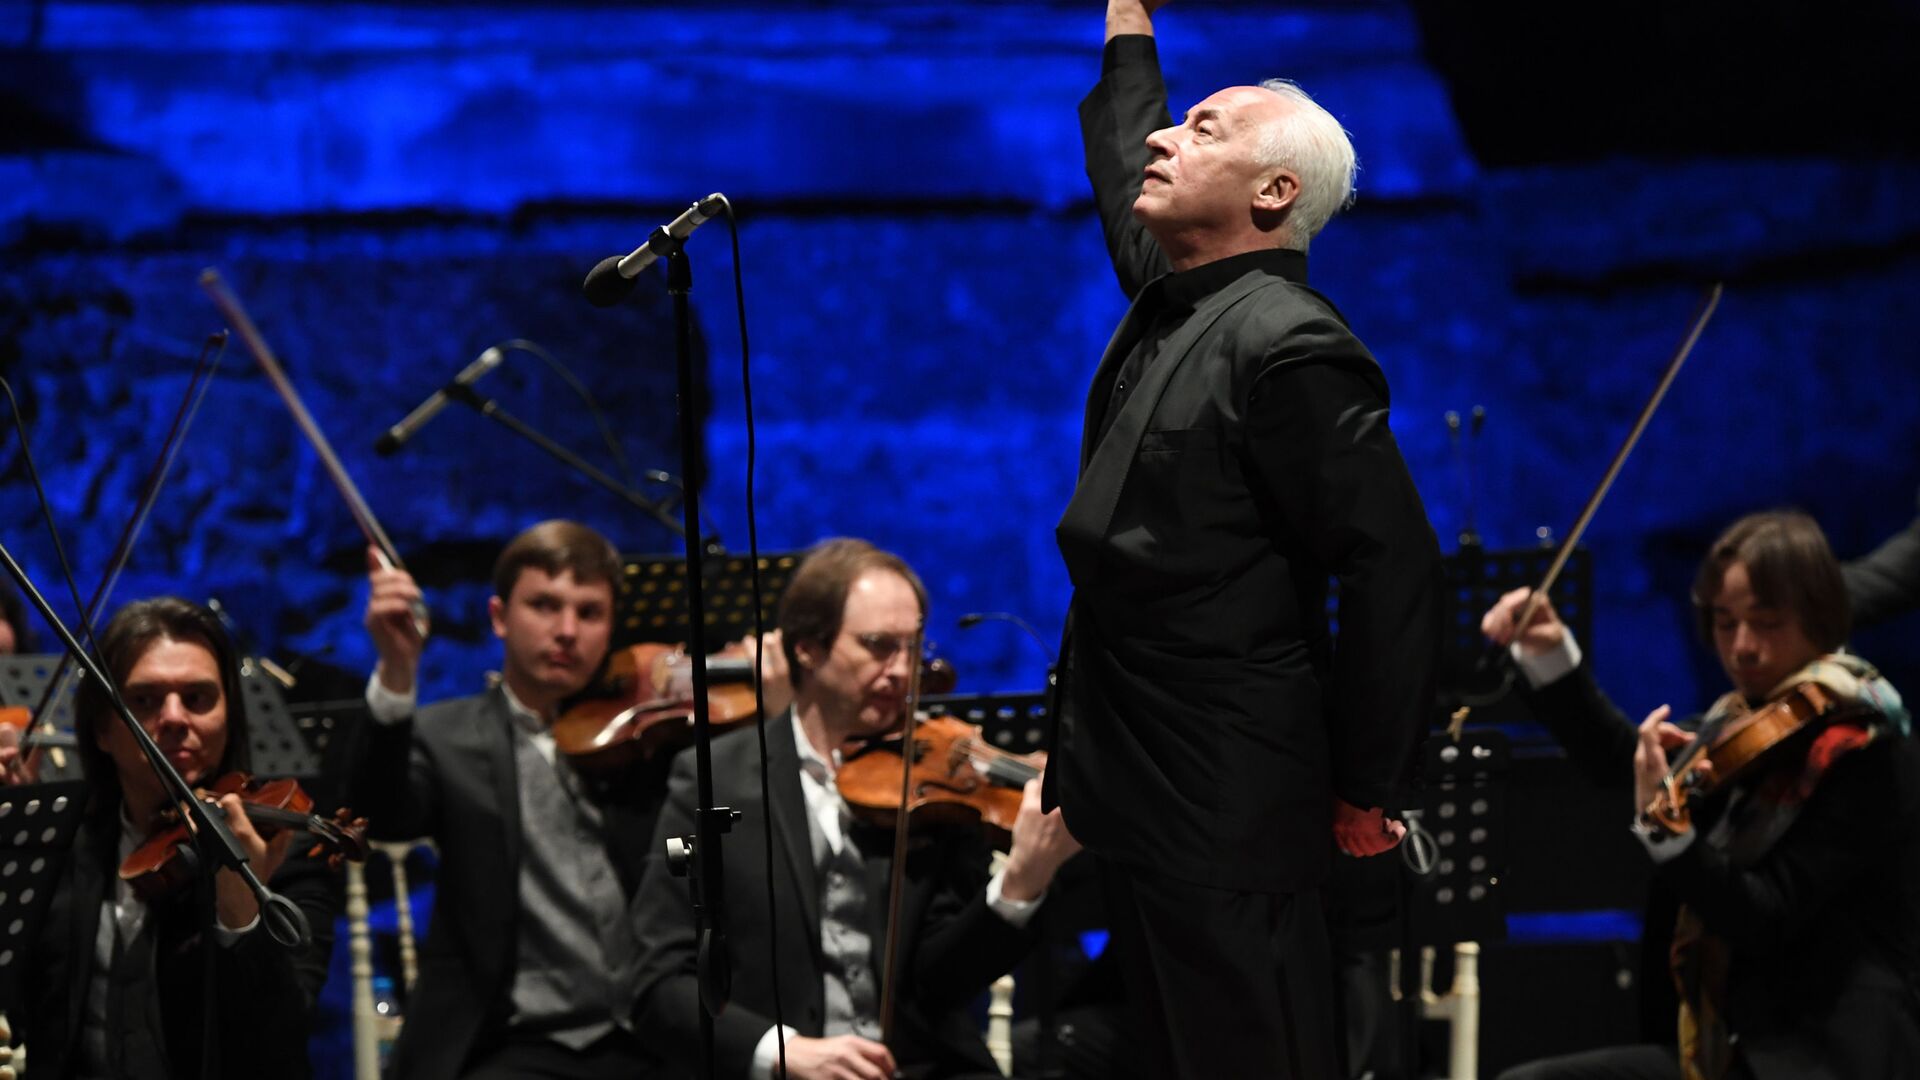 "Счастья, мира и любви": Владимир Спиваков дал благотворительный концерт в Гюмри 